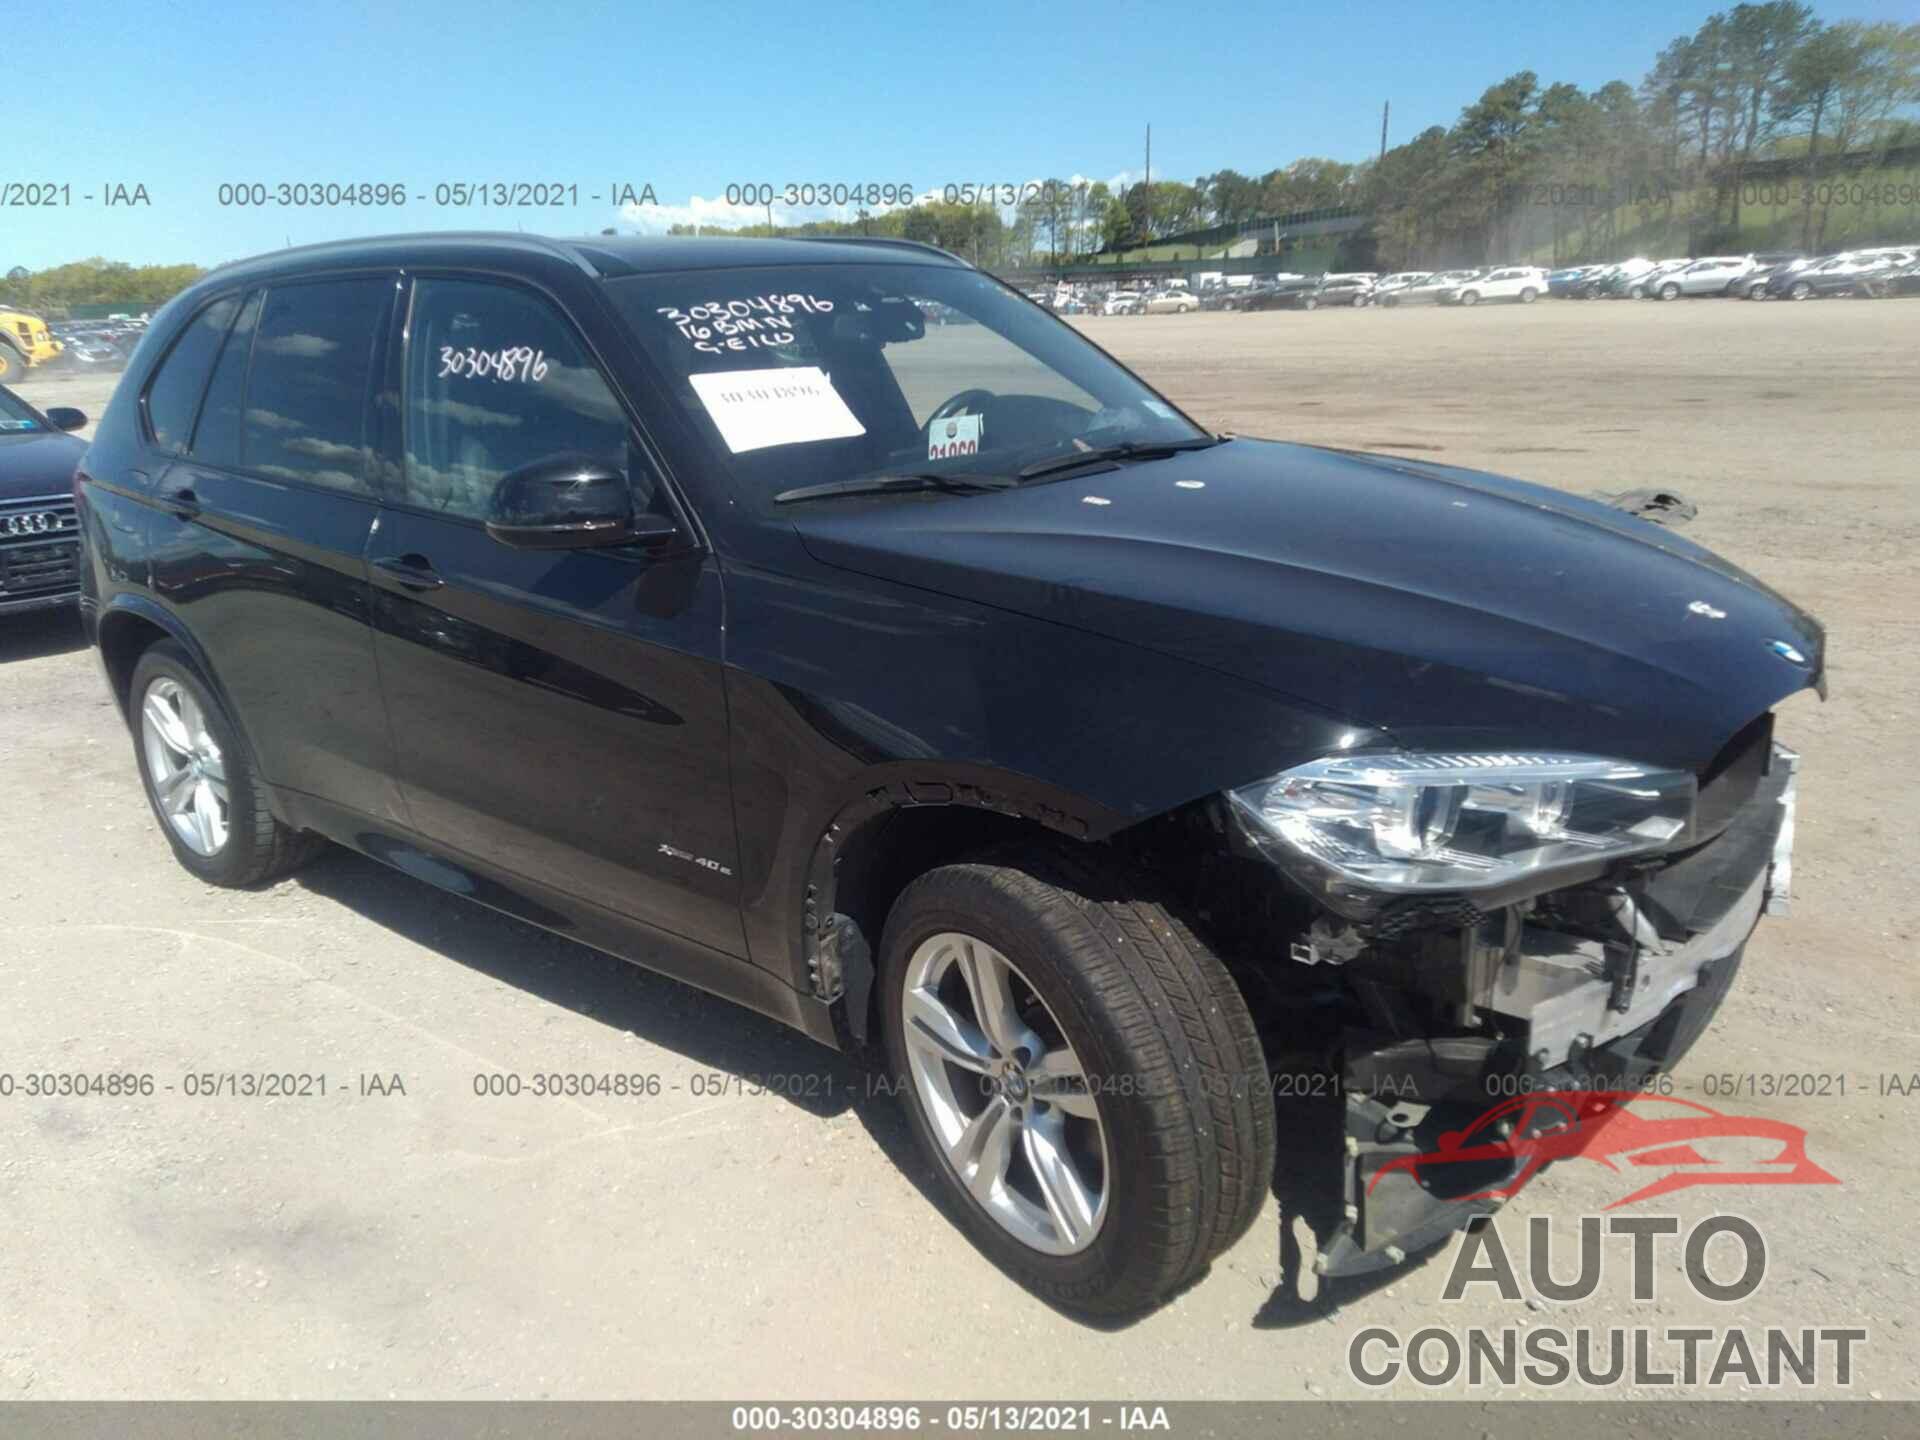 BMW X5 EDRIVE 2016 - 5UXKT0C58G0S76832